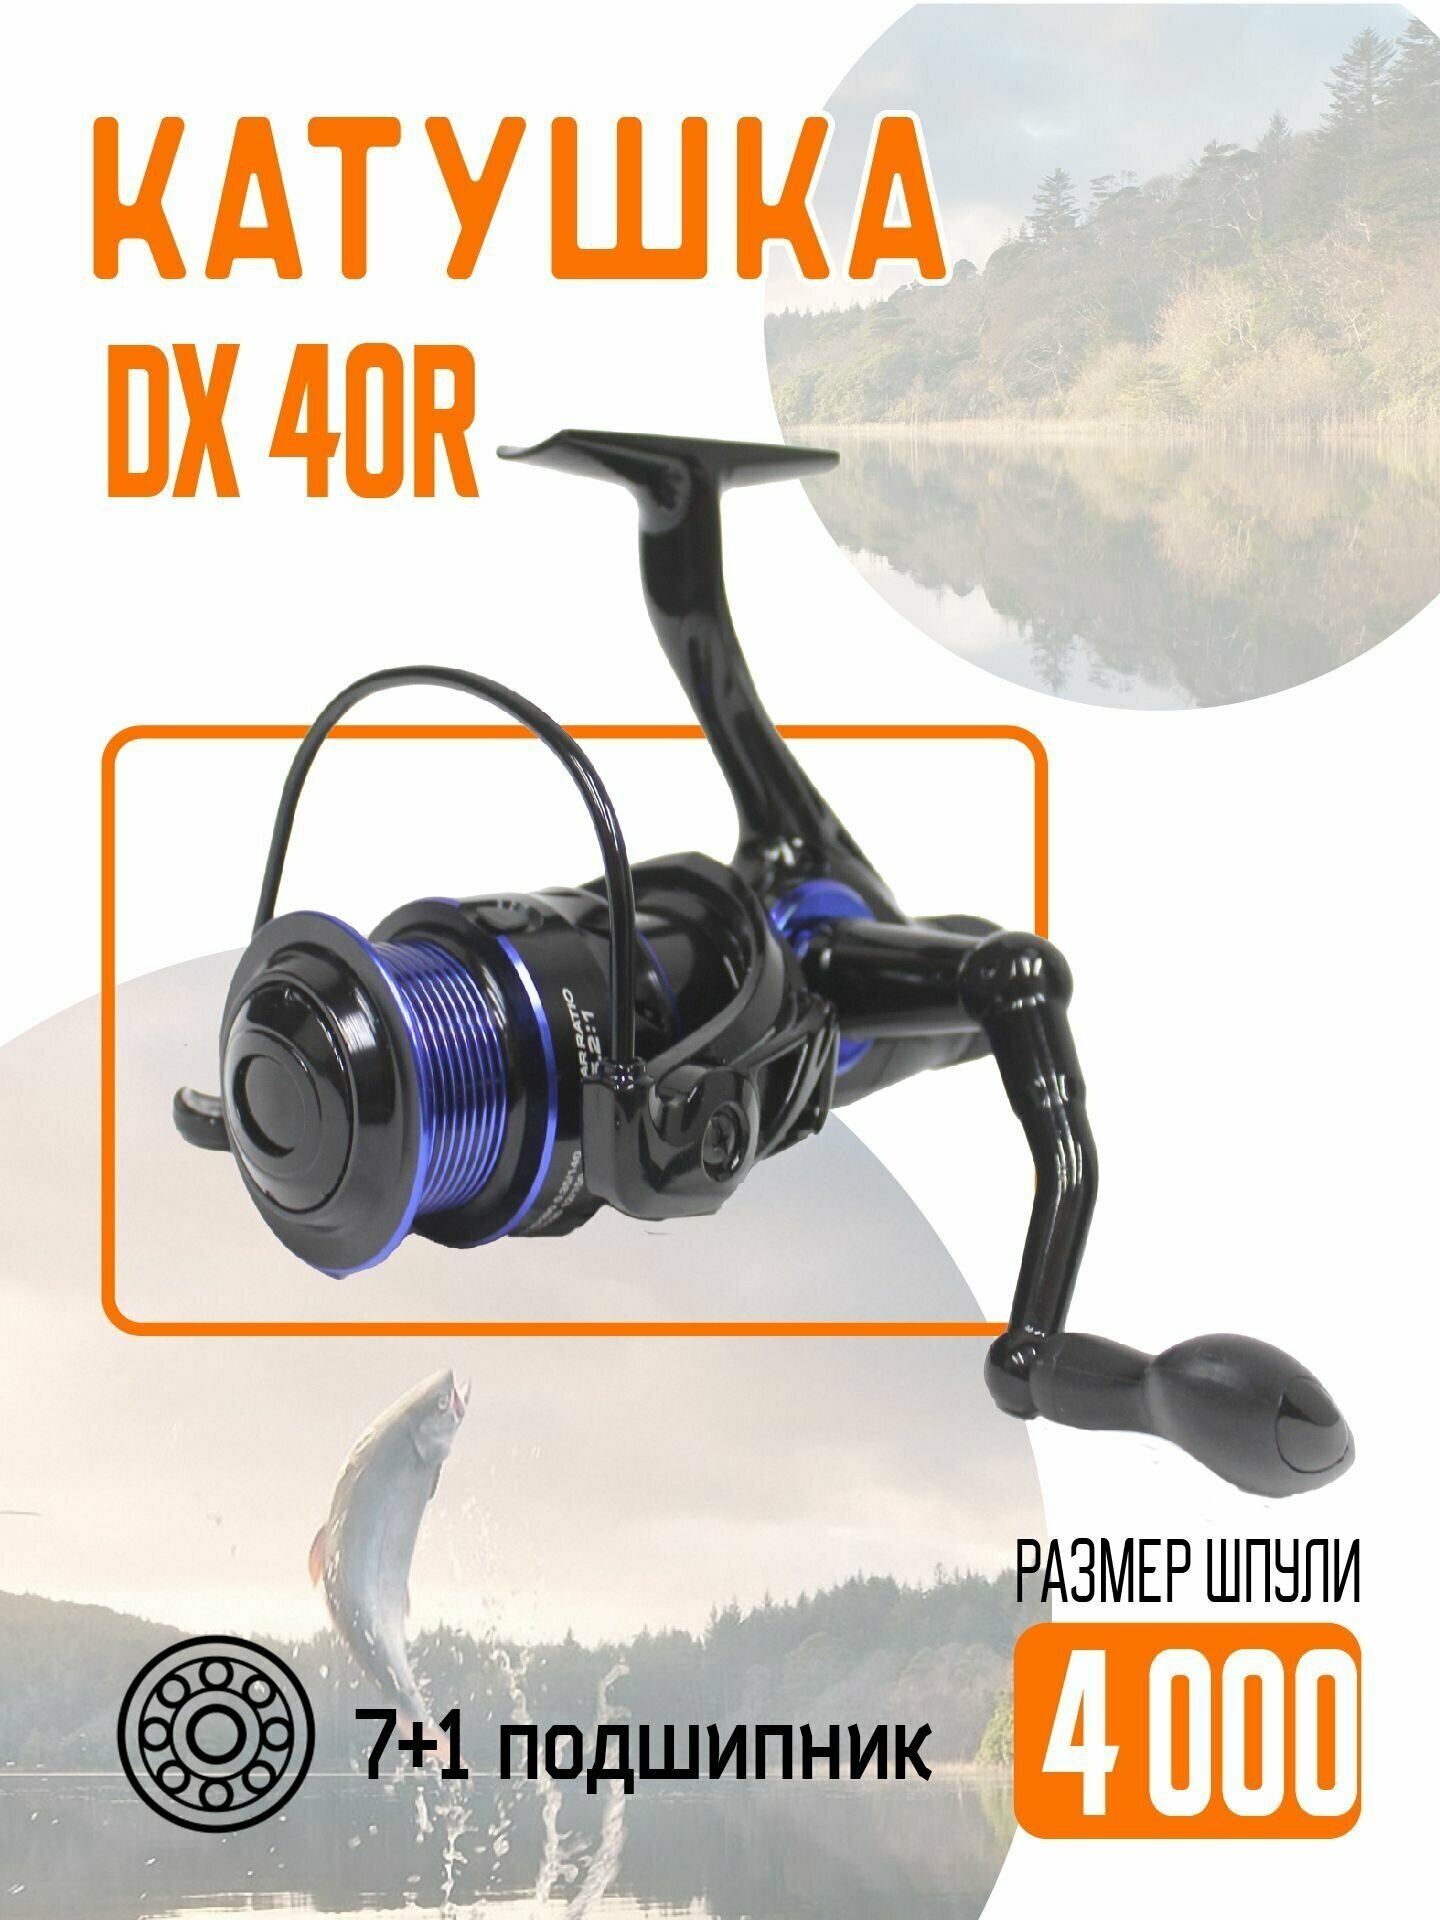 Катушка безынерционная DX-40R металлическая для рыбалки с удочки или спиннинга с запасной пластиковой шпулей.